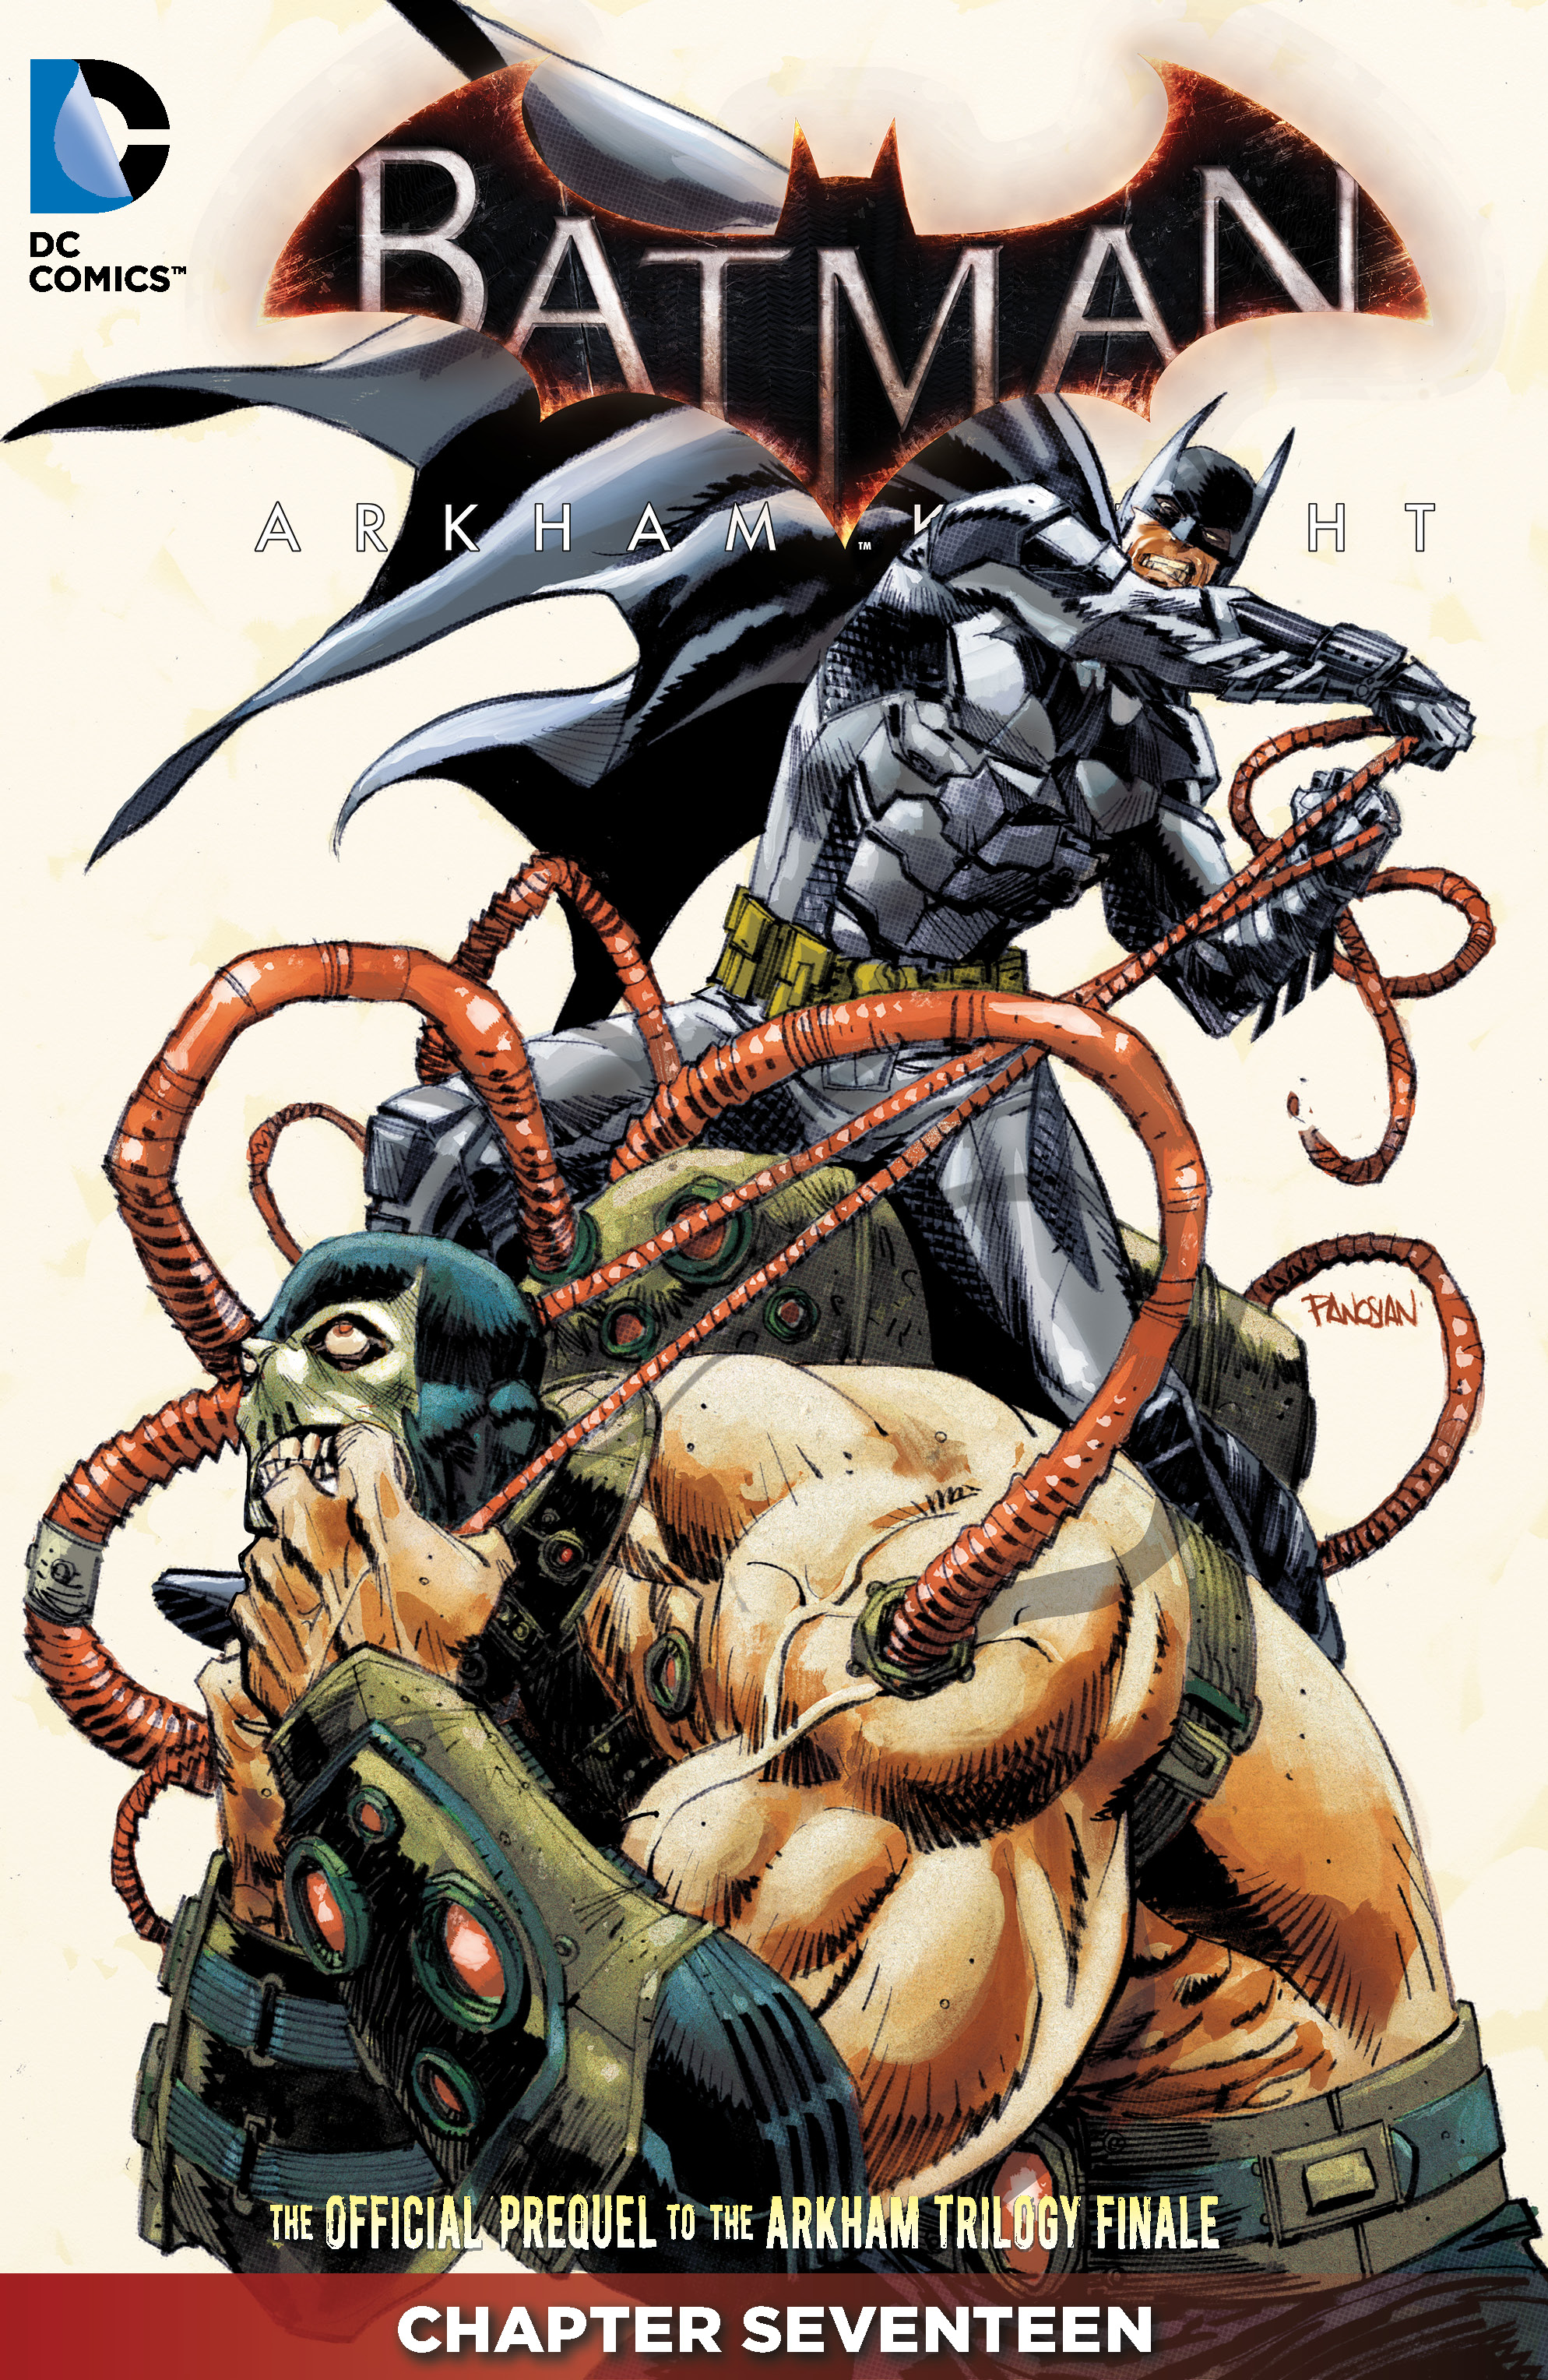 Batman: Arkham Knight #17 preview images